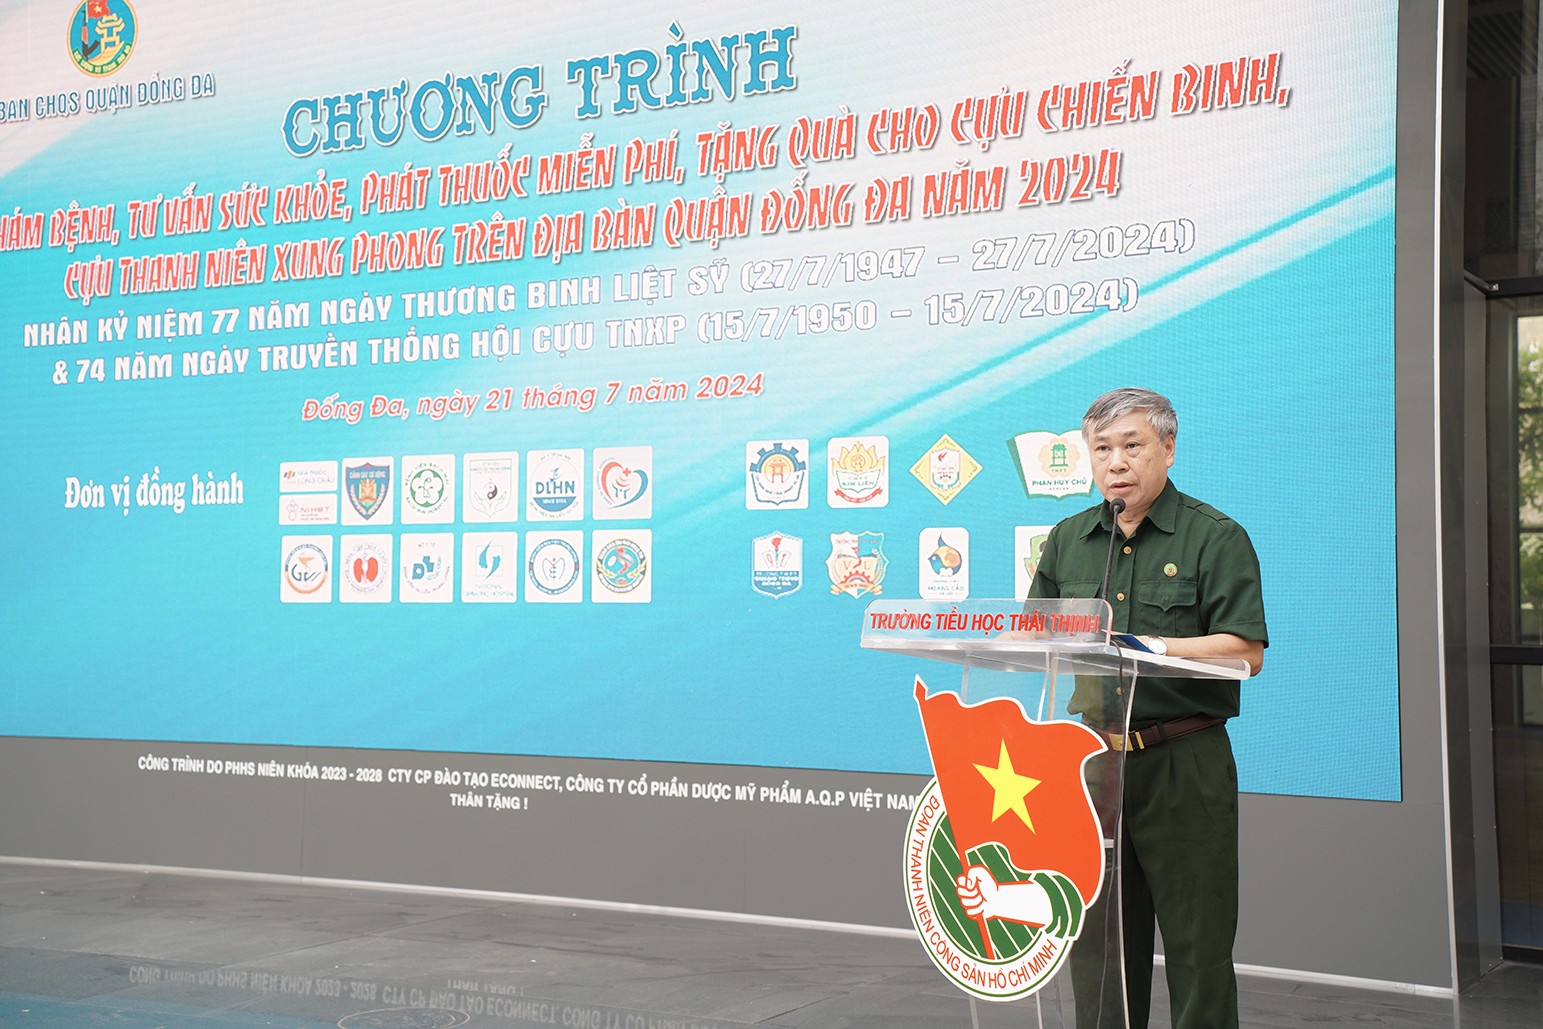 Đại diện người có công trên địa bàn quận, đồng chí Lê Đức Thảo - Chủ tịch Hội Cựu TNXP quận Đống Đa phát biểu tại chương trình